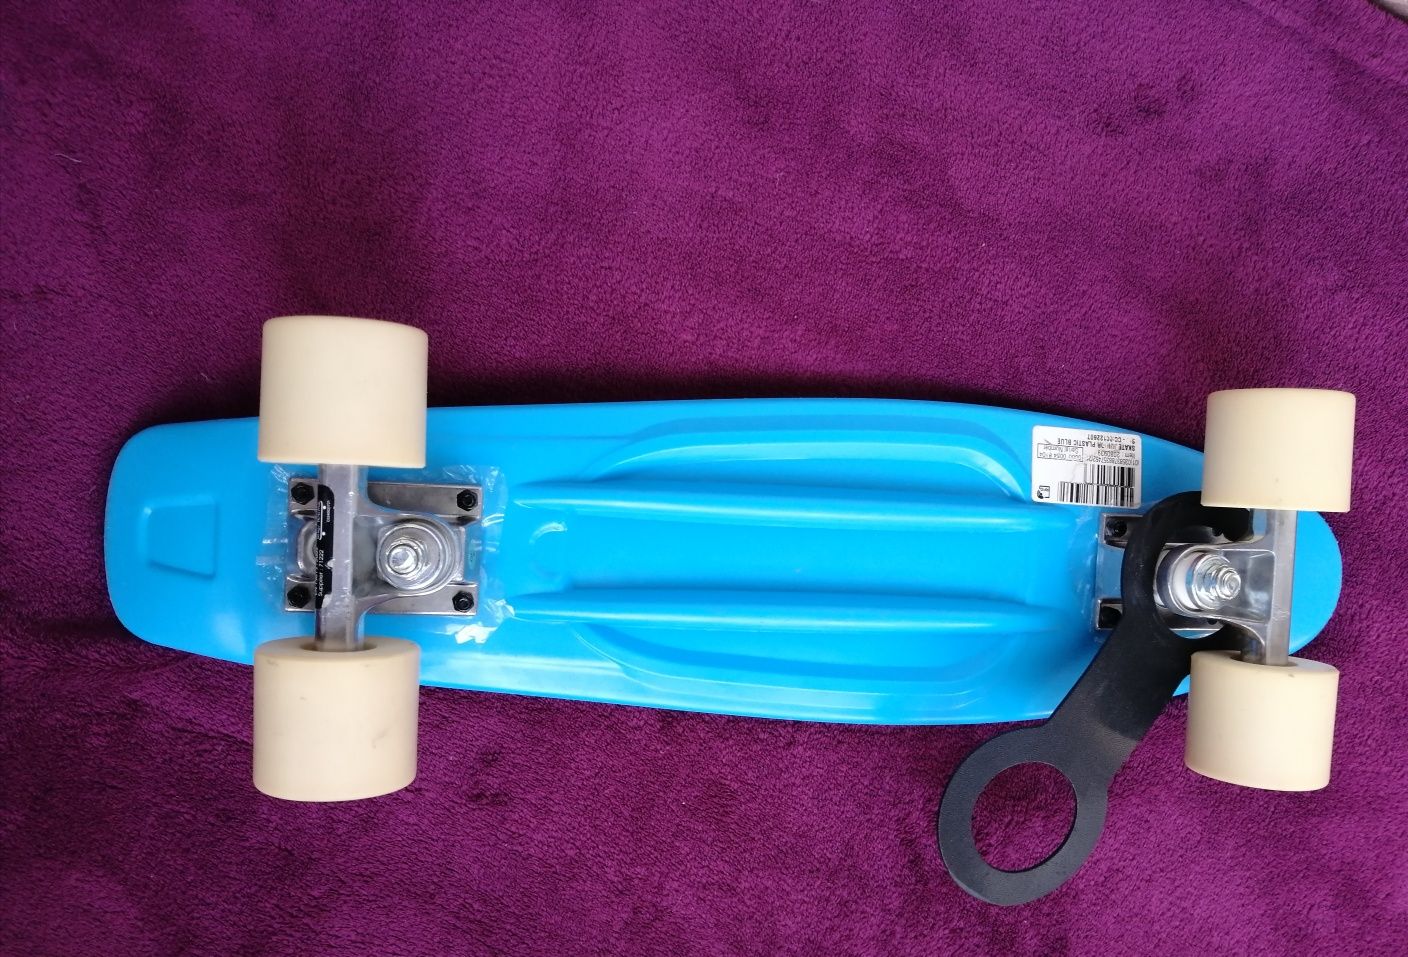 Skateboard și set protectie mărimea xs